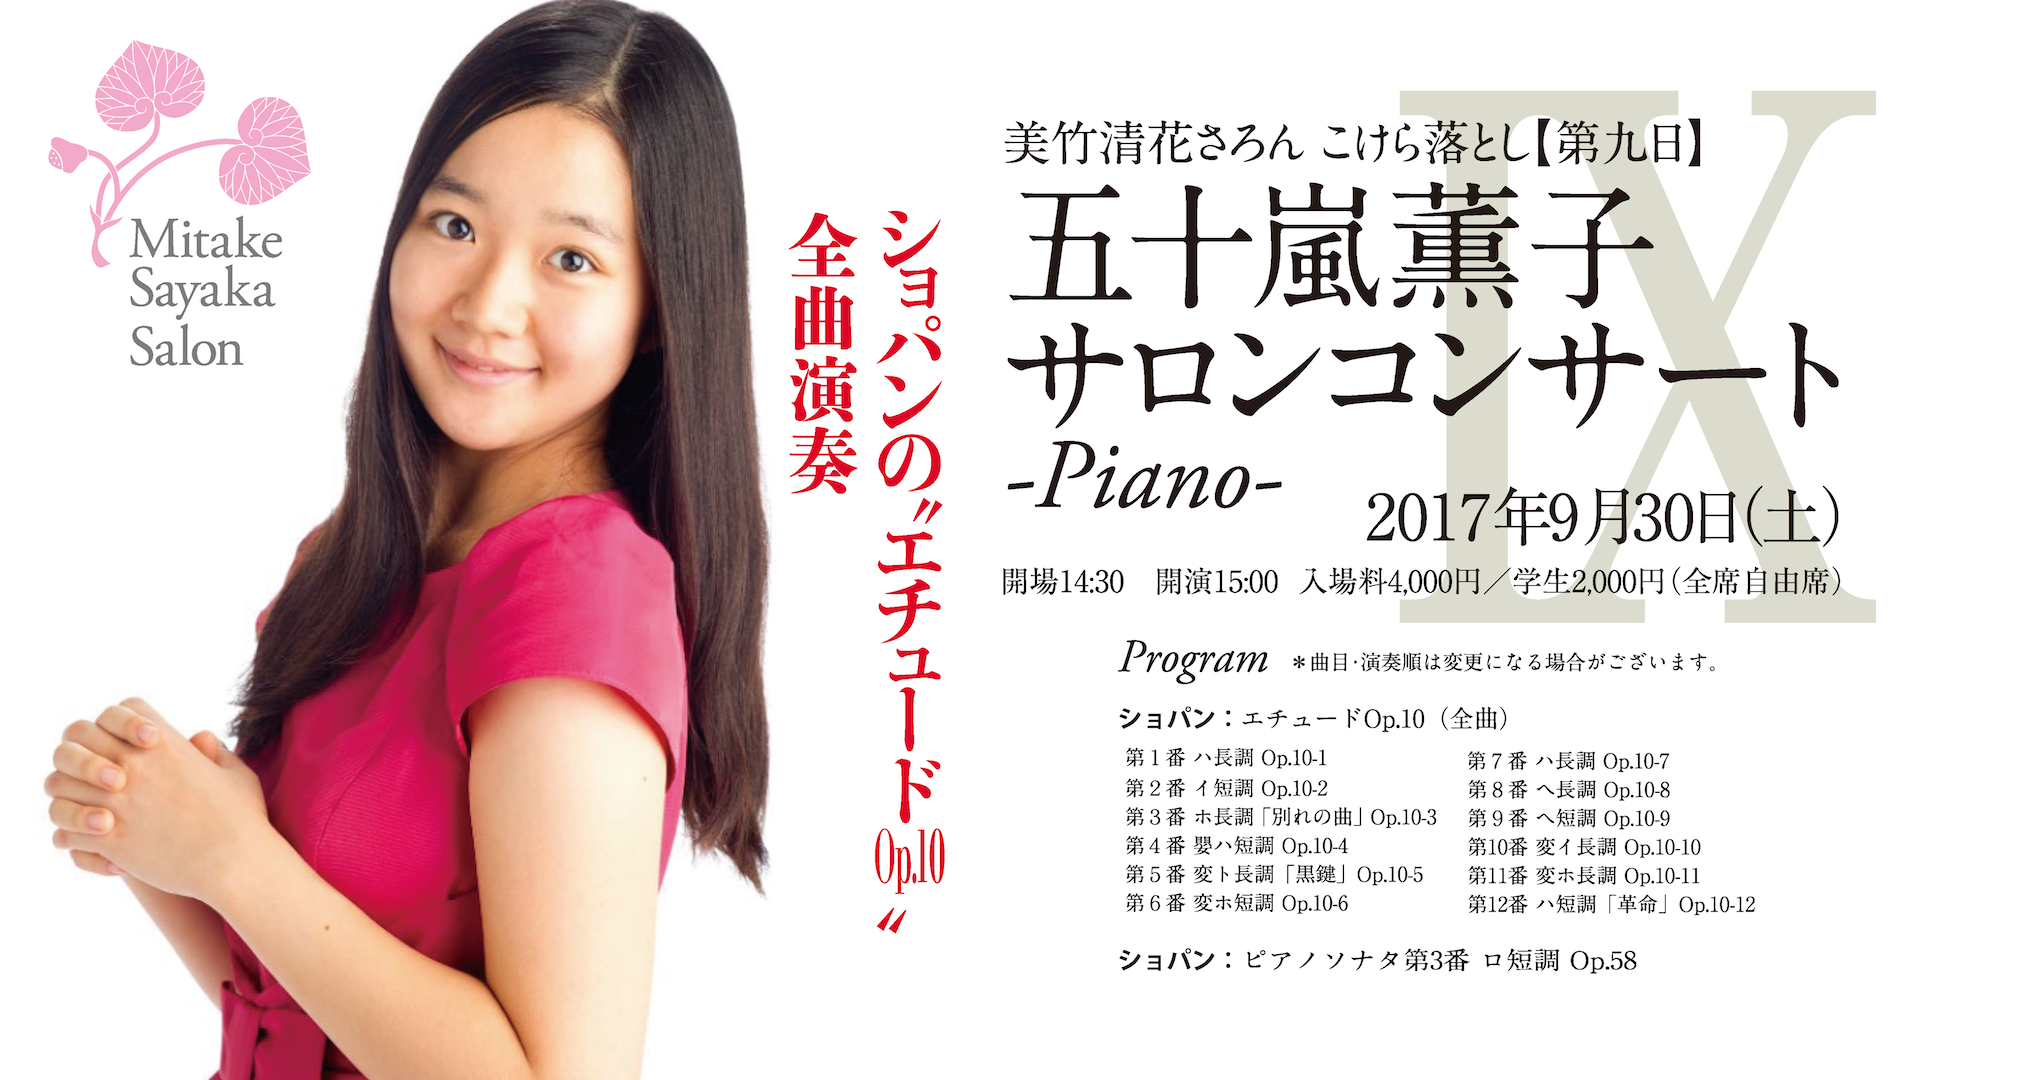 【第九日】五十嵐薫子サロンコンサート-Piano-